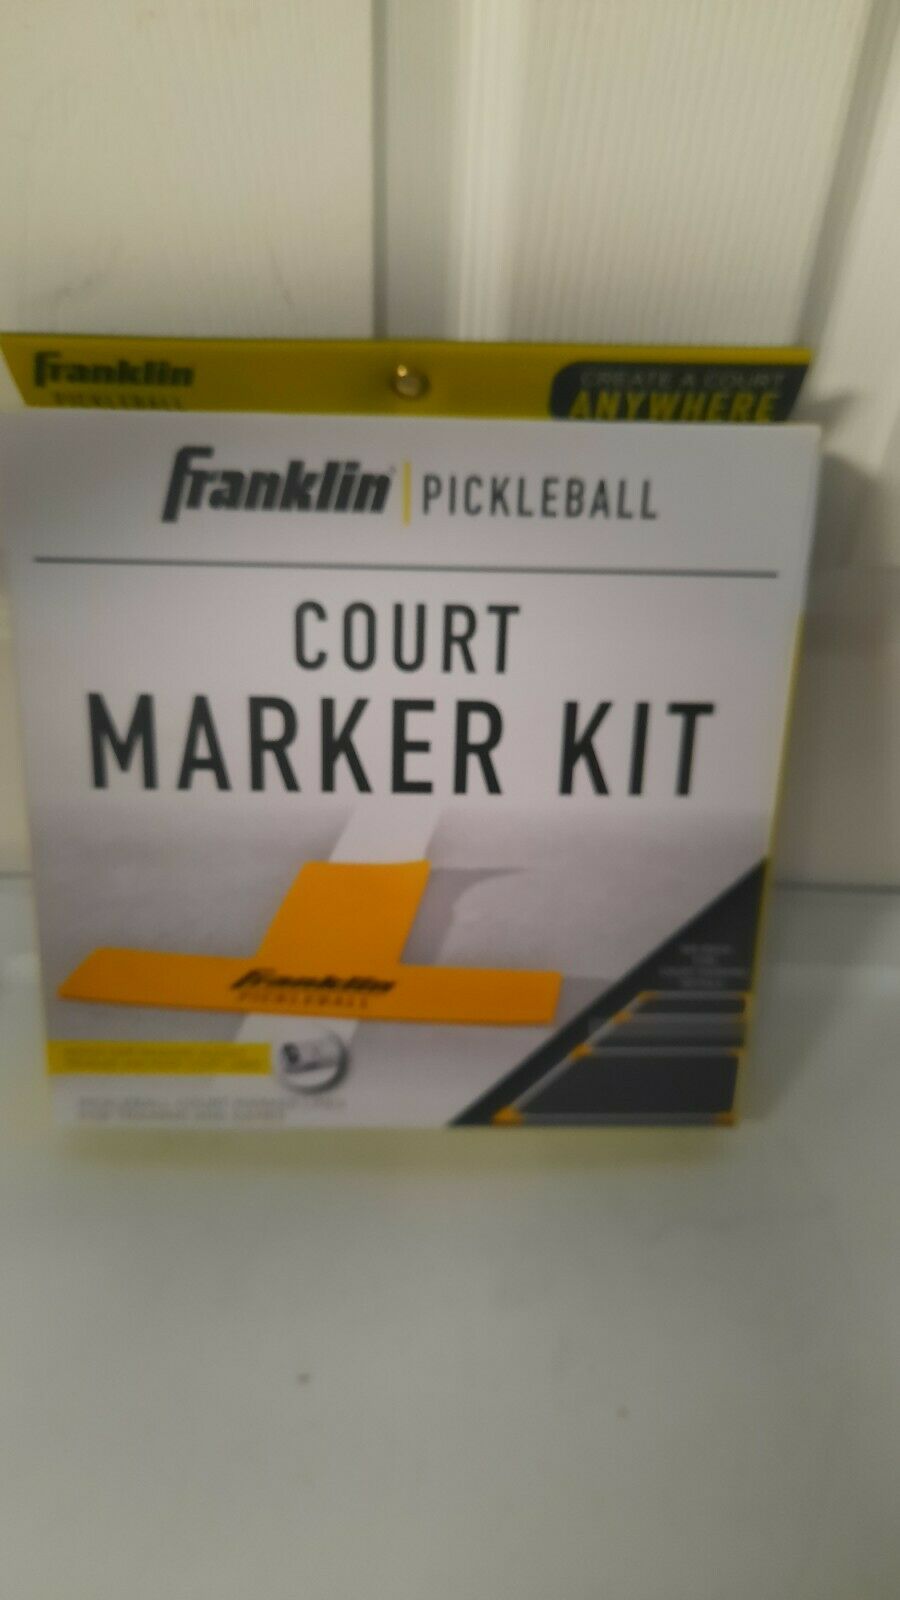 Franklin Pickleball court marker kit